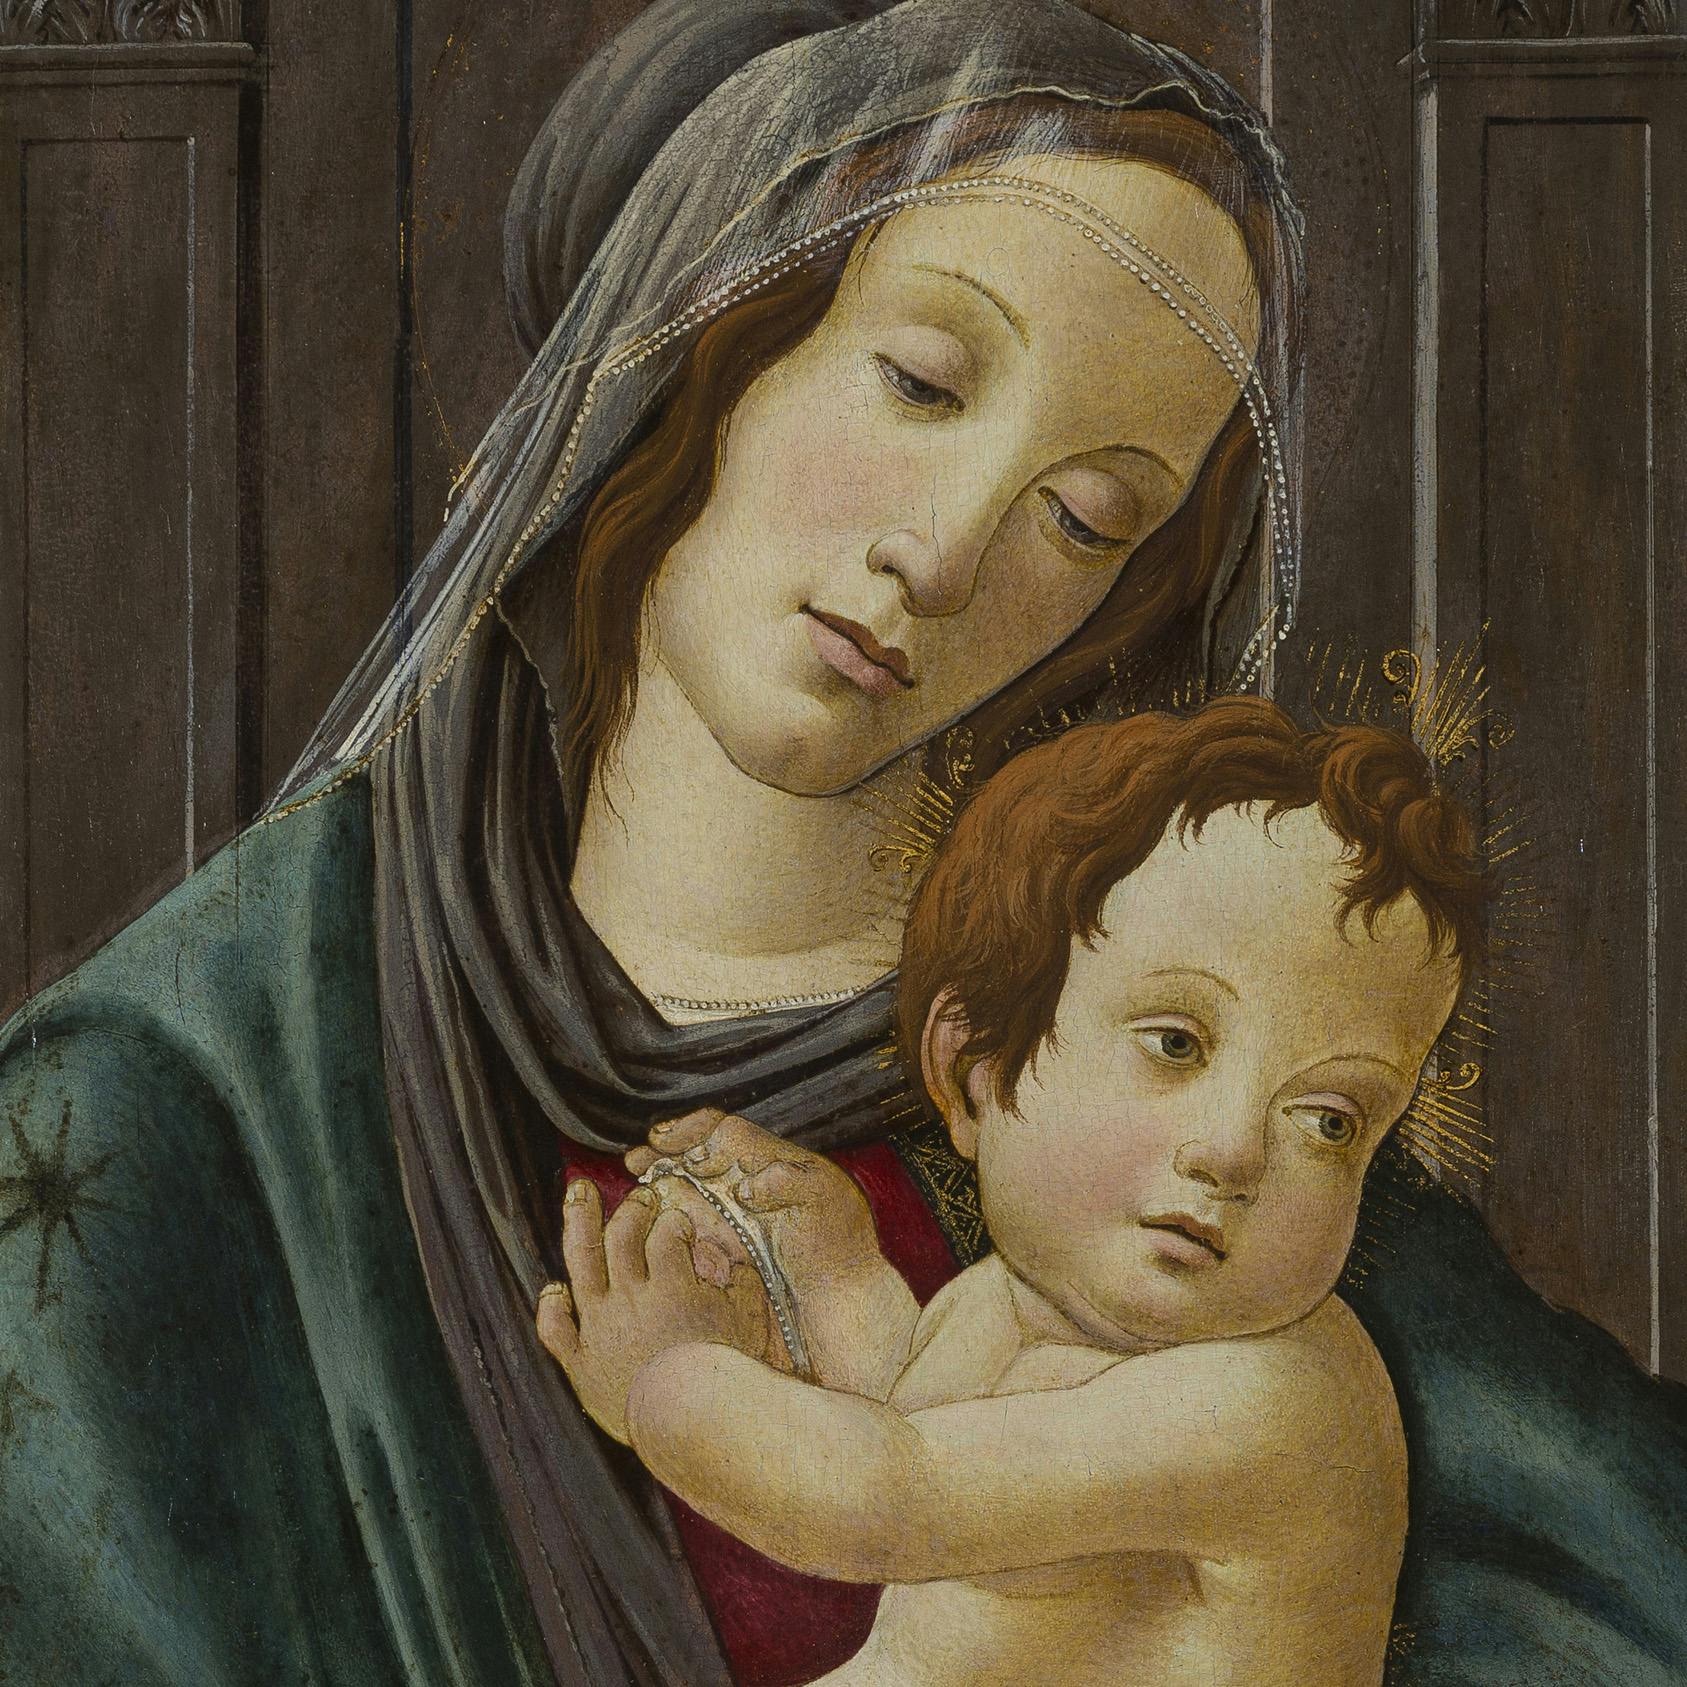 Sandro Botticelli, Madonna col Bambino, 1490 ca. (particolare)